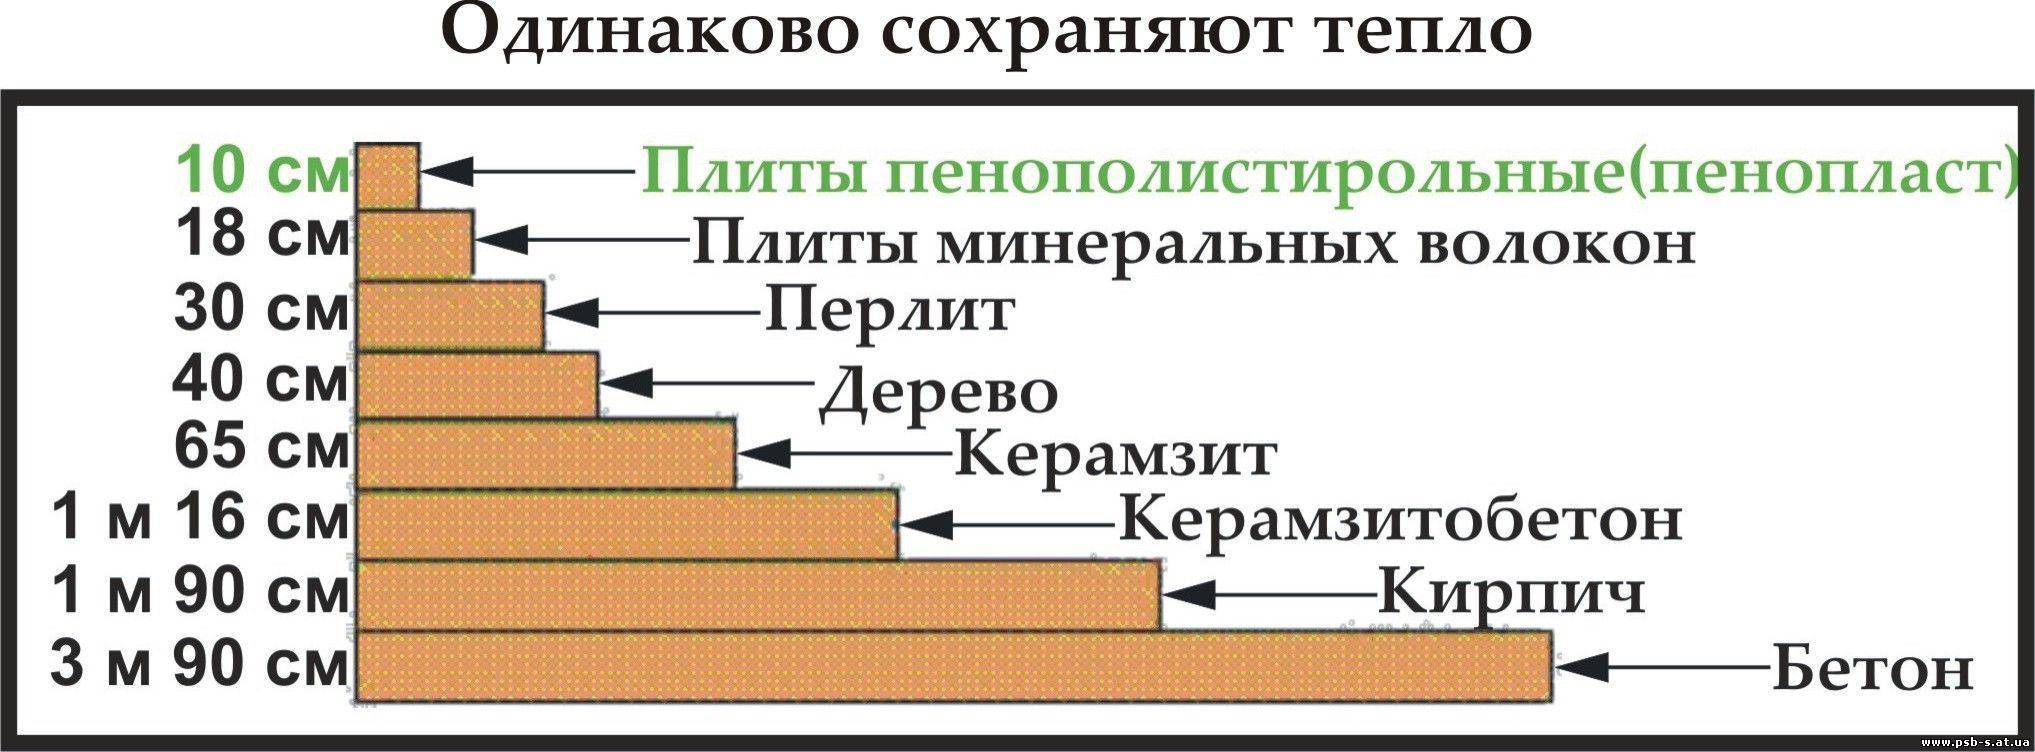 Таблица теплоизоляции керамзита